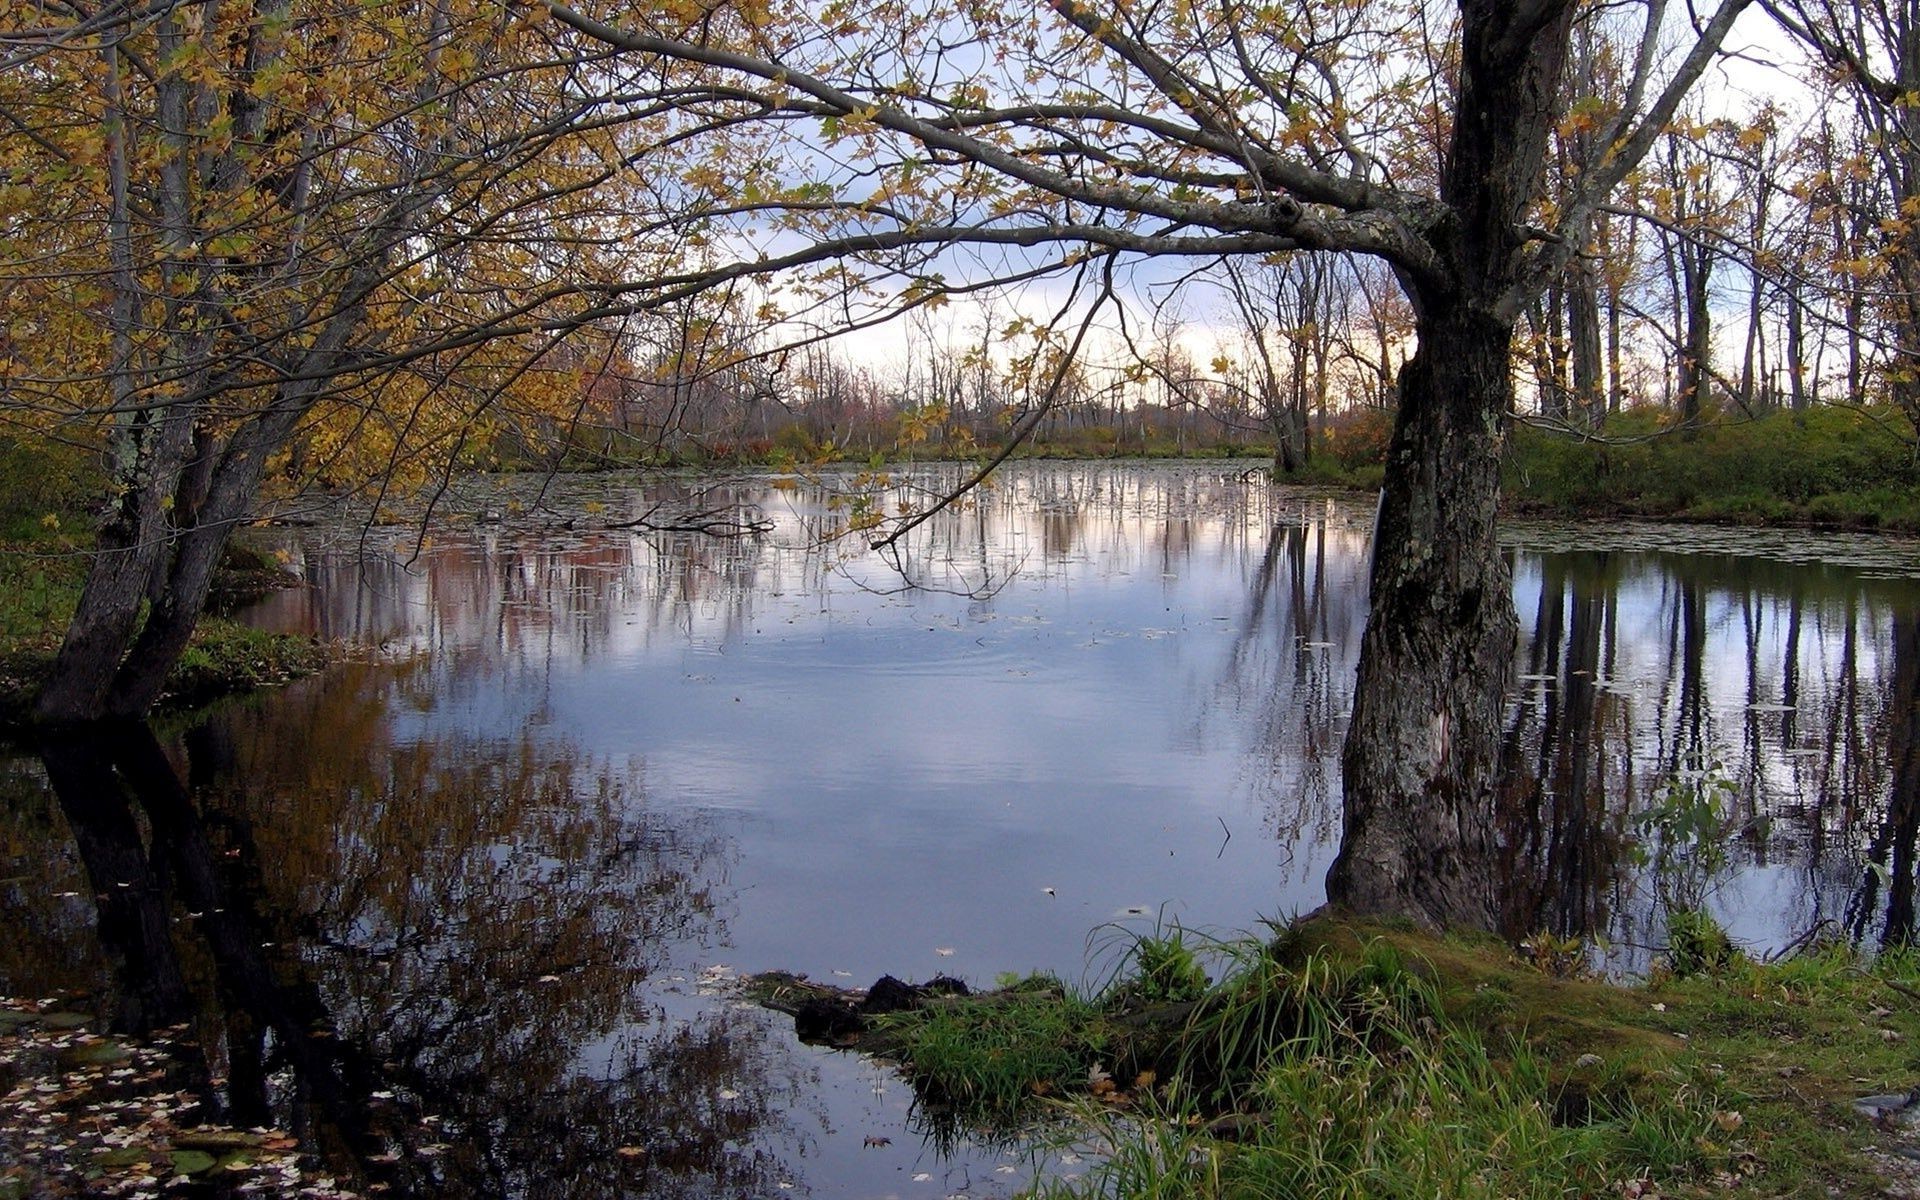 озера воды осень дерево пейзаж отражение природа древесины река лист на открытом воздухе парк бассейн живописный рассвет флуд сезон